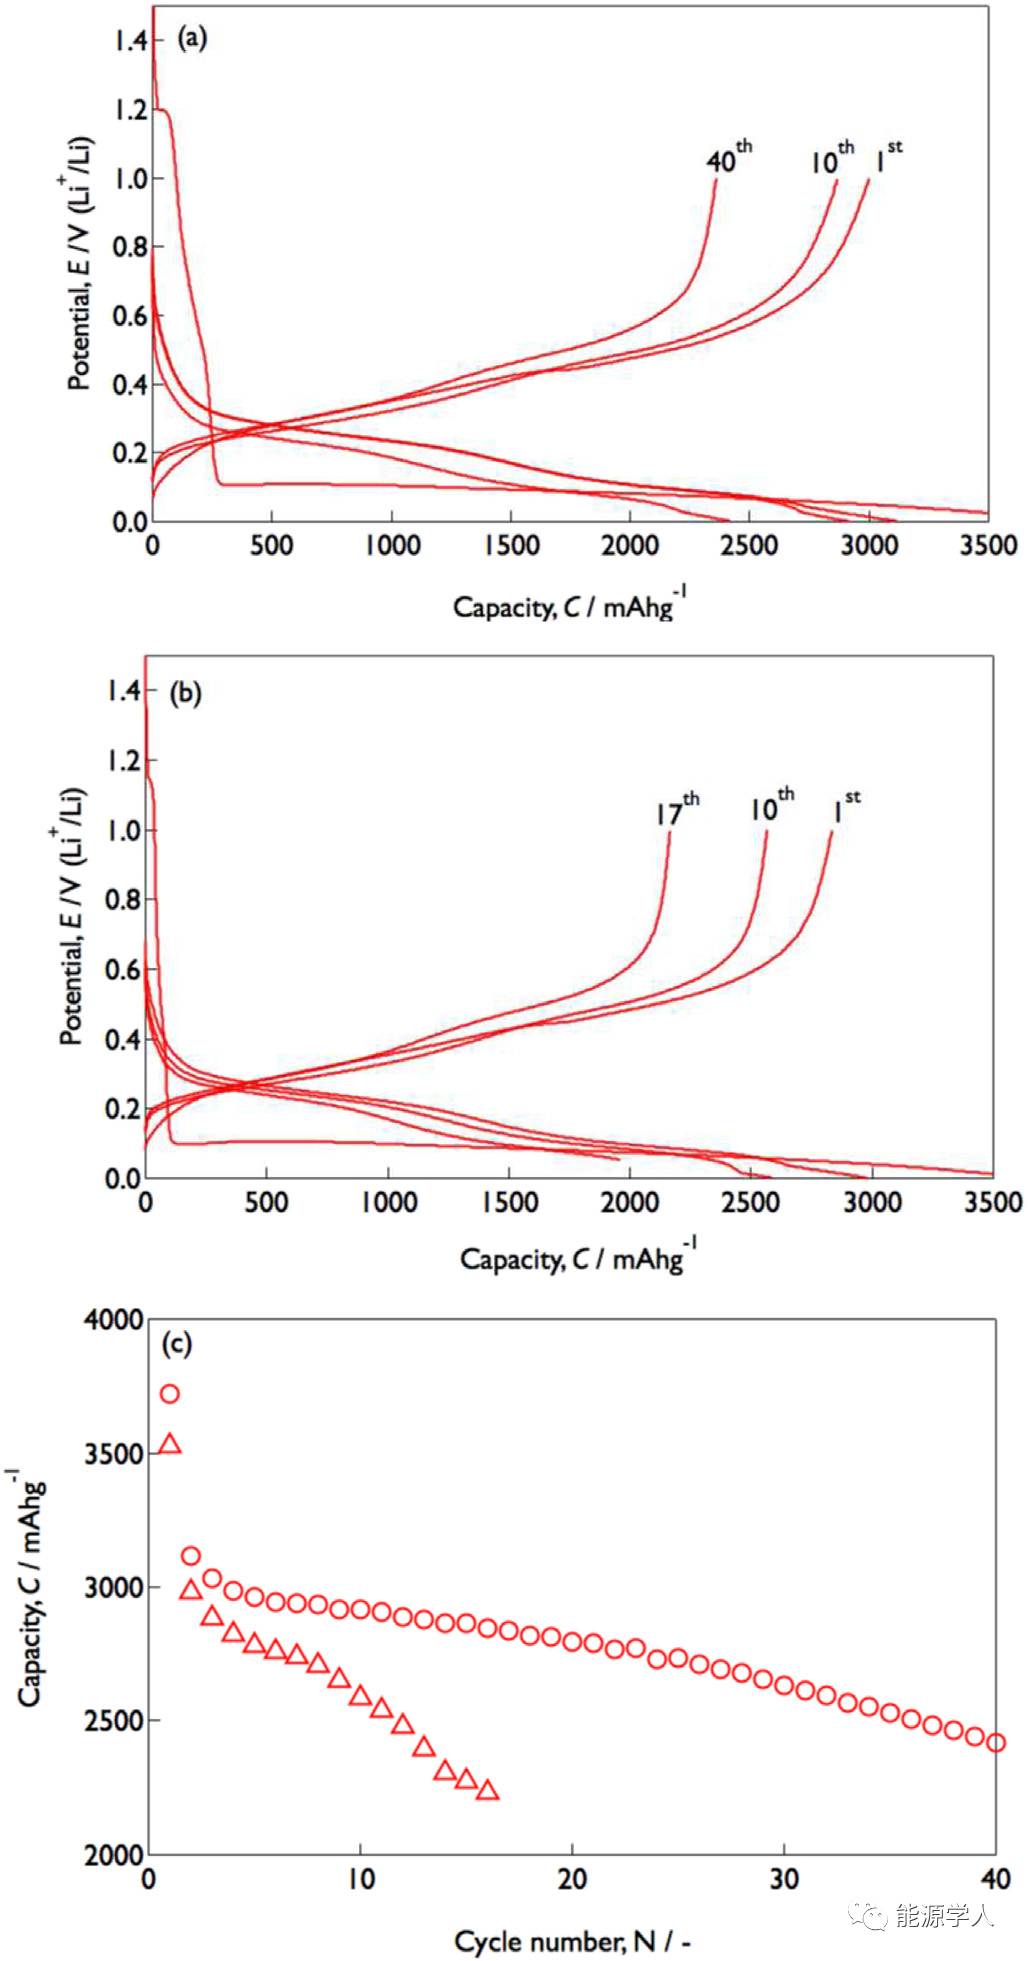 【电池生产】复合集流体大幅提高硅碳负极稳定性